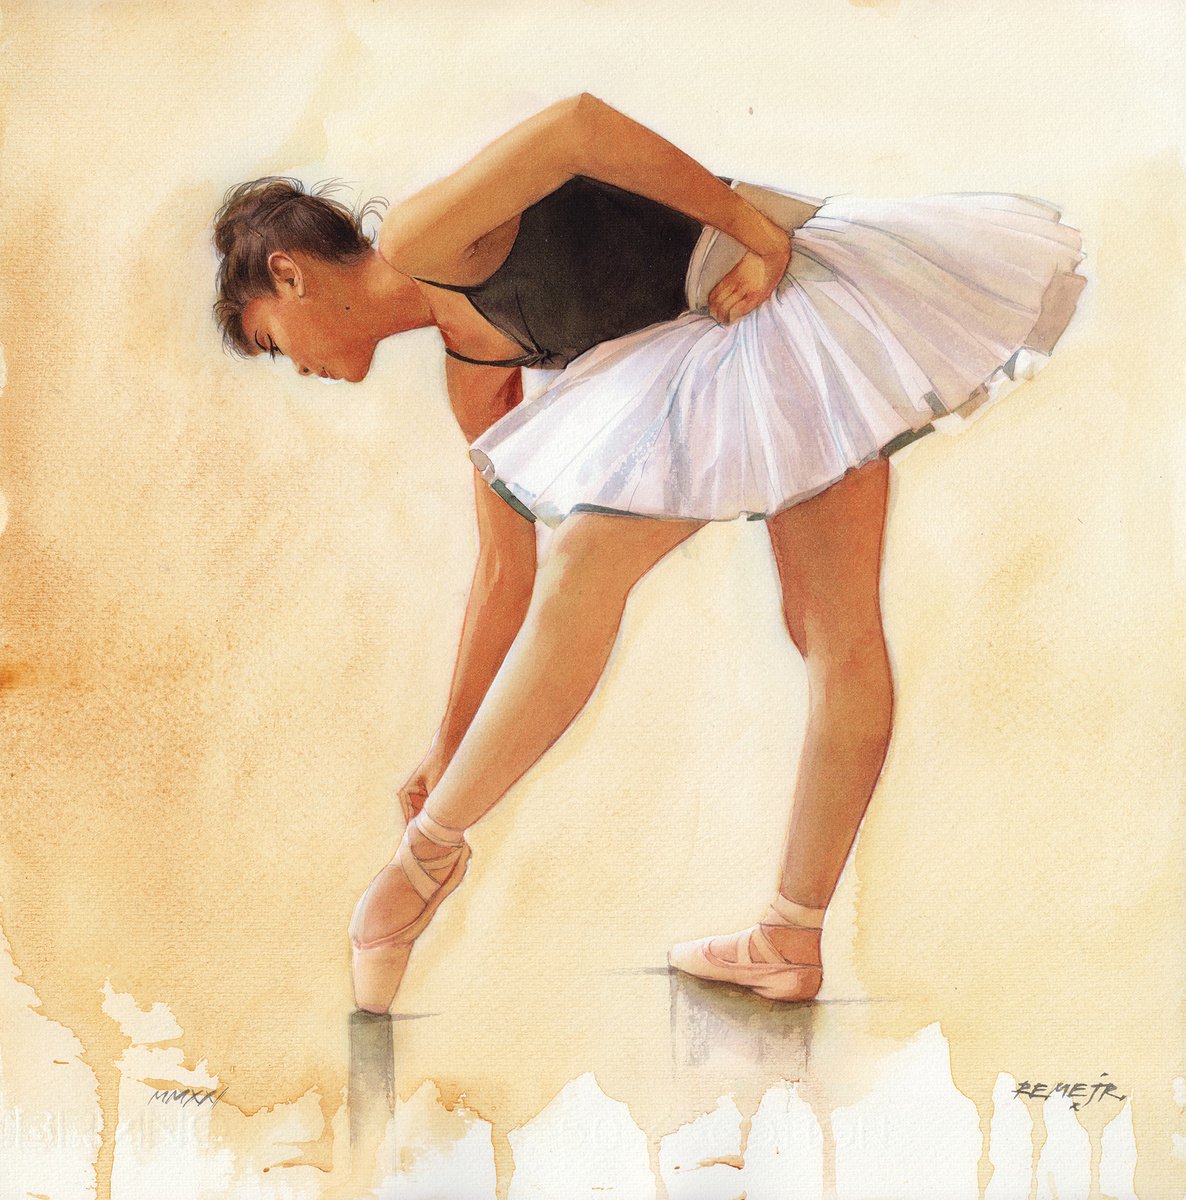 Ballet Dancer CCXIX by REME Jr.